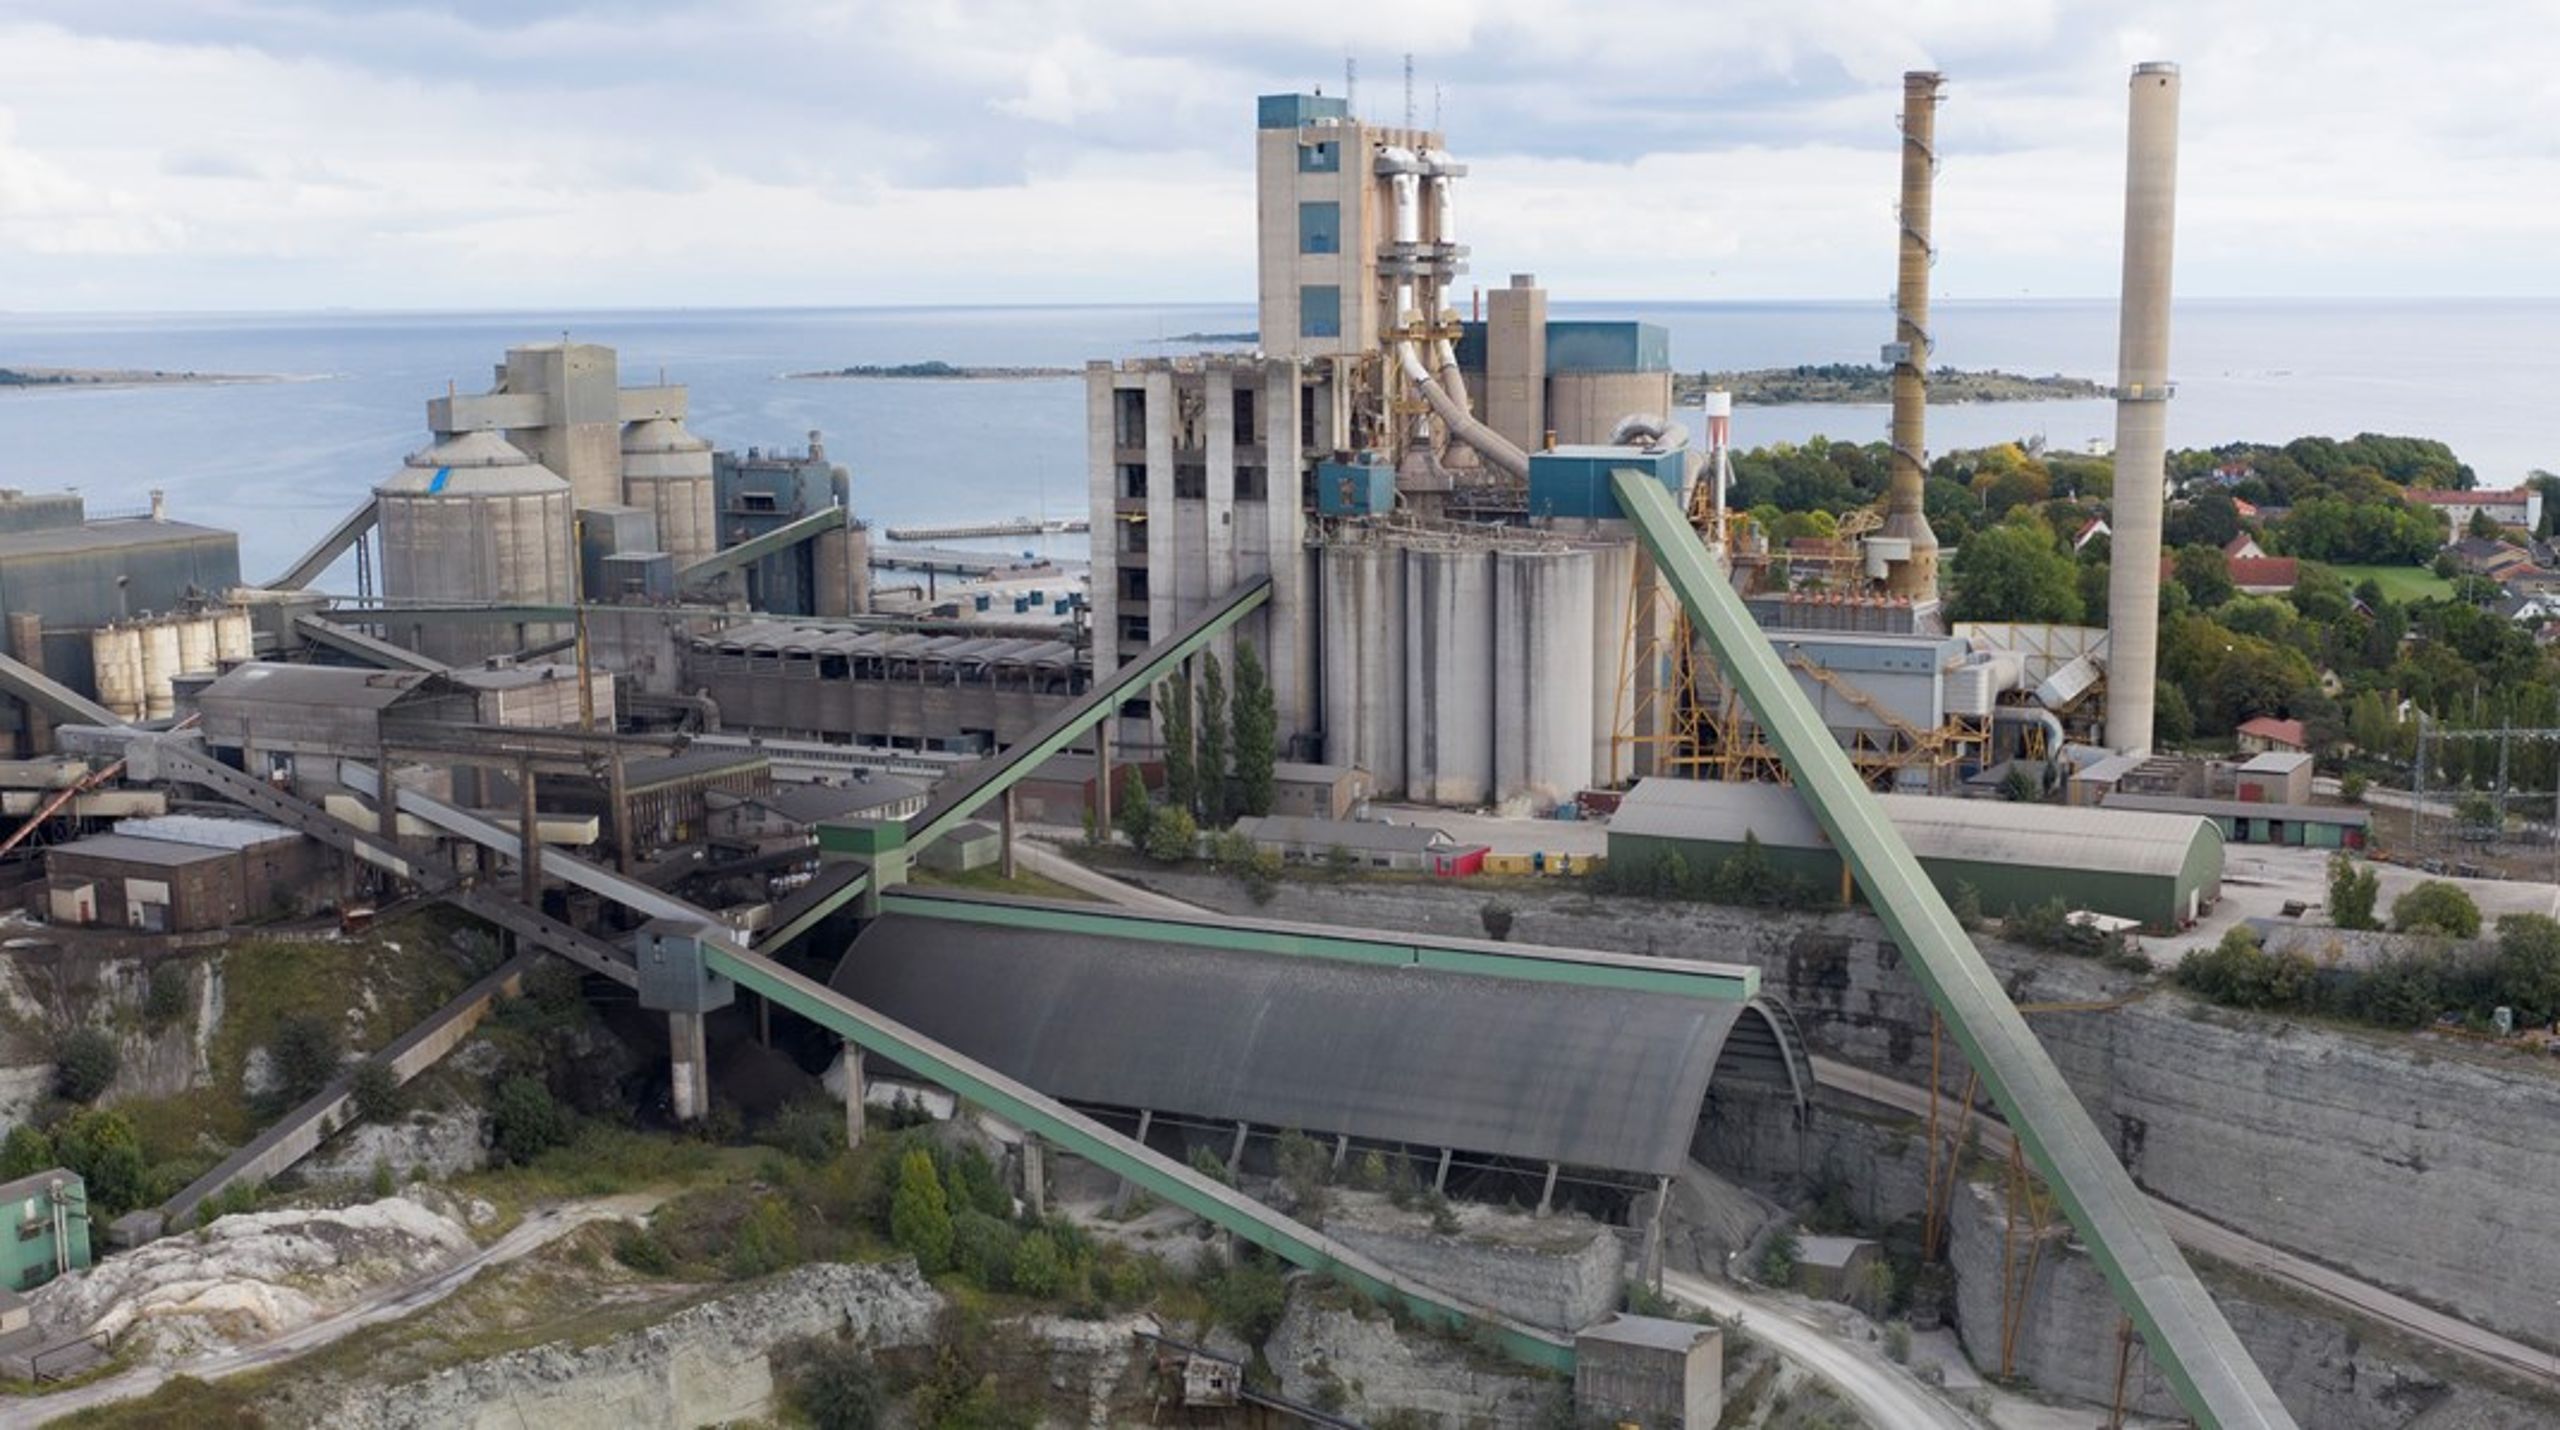 Cementas cementfabrik och kalkbrott i Slite på Gotland. Bolaget förväntar sig att en ny regering tar tag i frågan om en stamnätskabel till Gotland omedelbart.